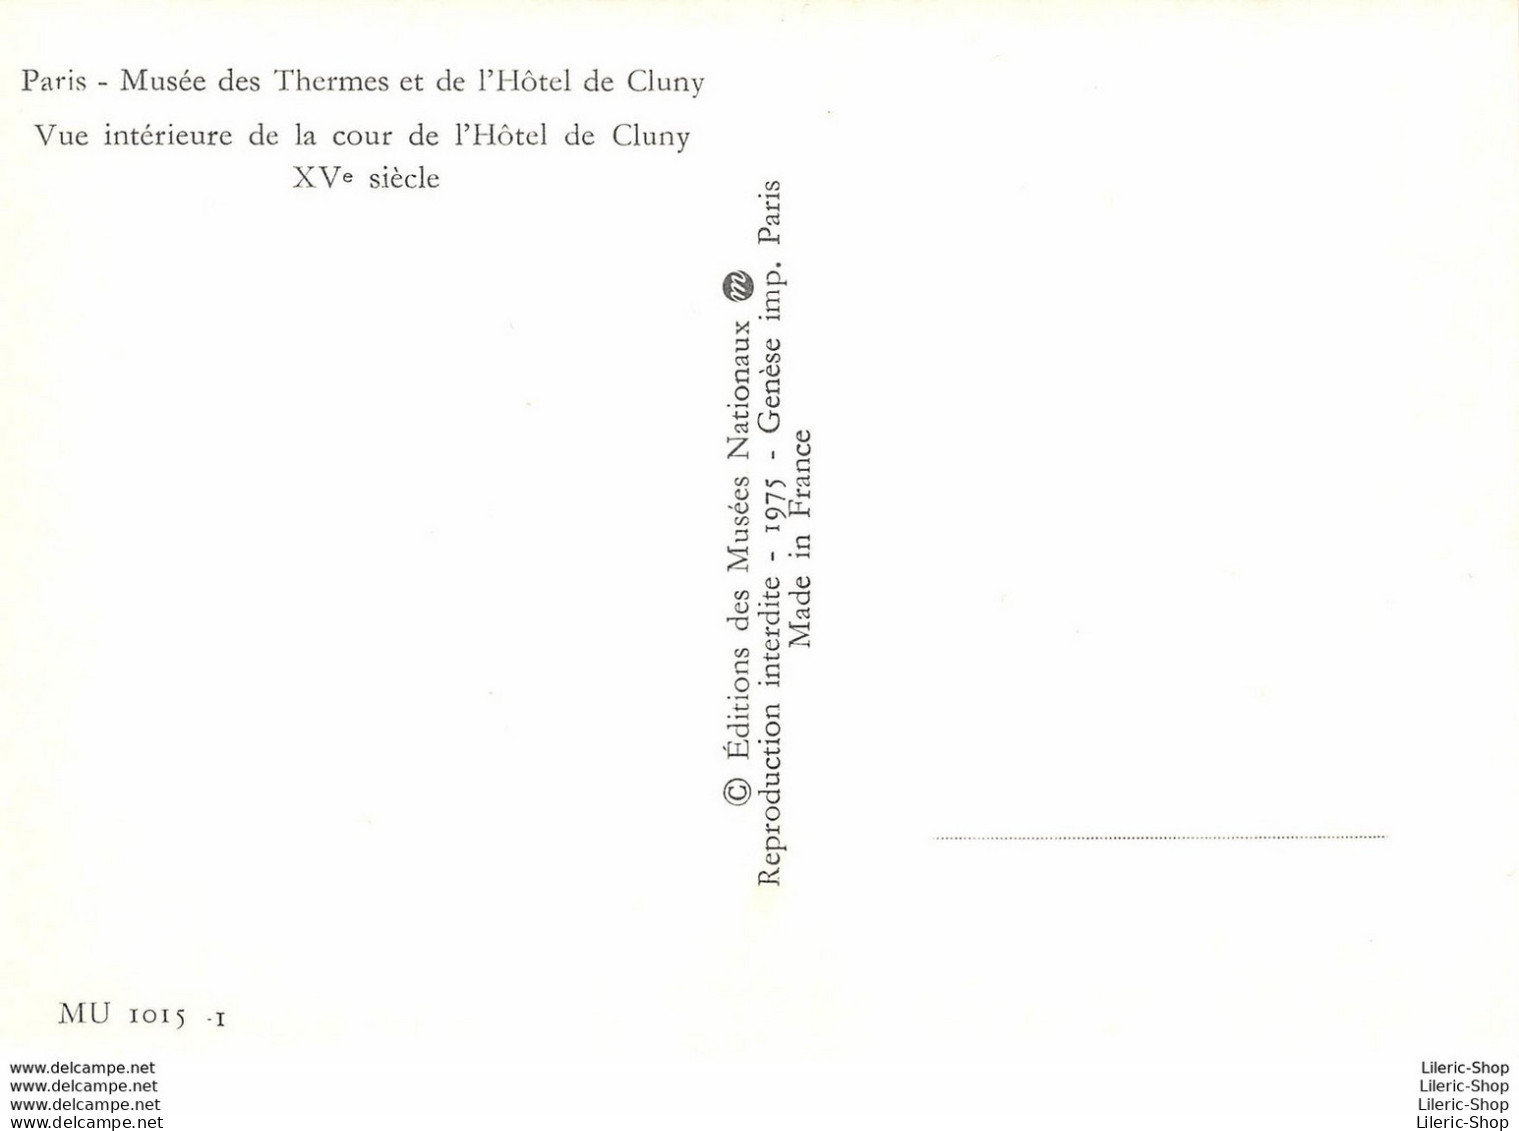 [75] PARIS - MUSÉE DES THERMES ET DE L'HÔTEL DE CLUNY -VUE INTÉRIEURE DE LA COUR - CPM ♥♥♥ - Musei